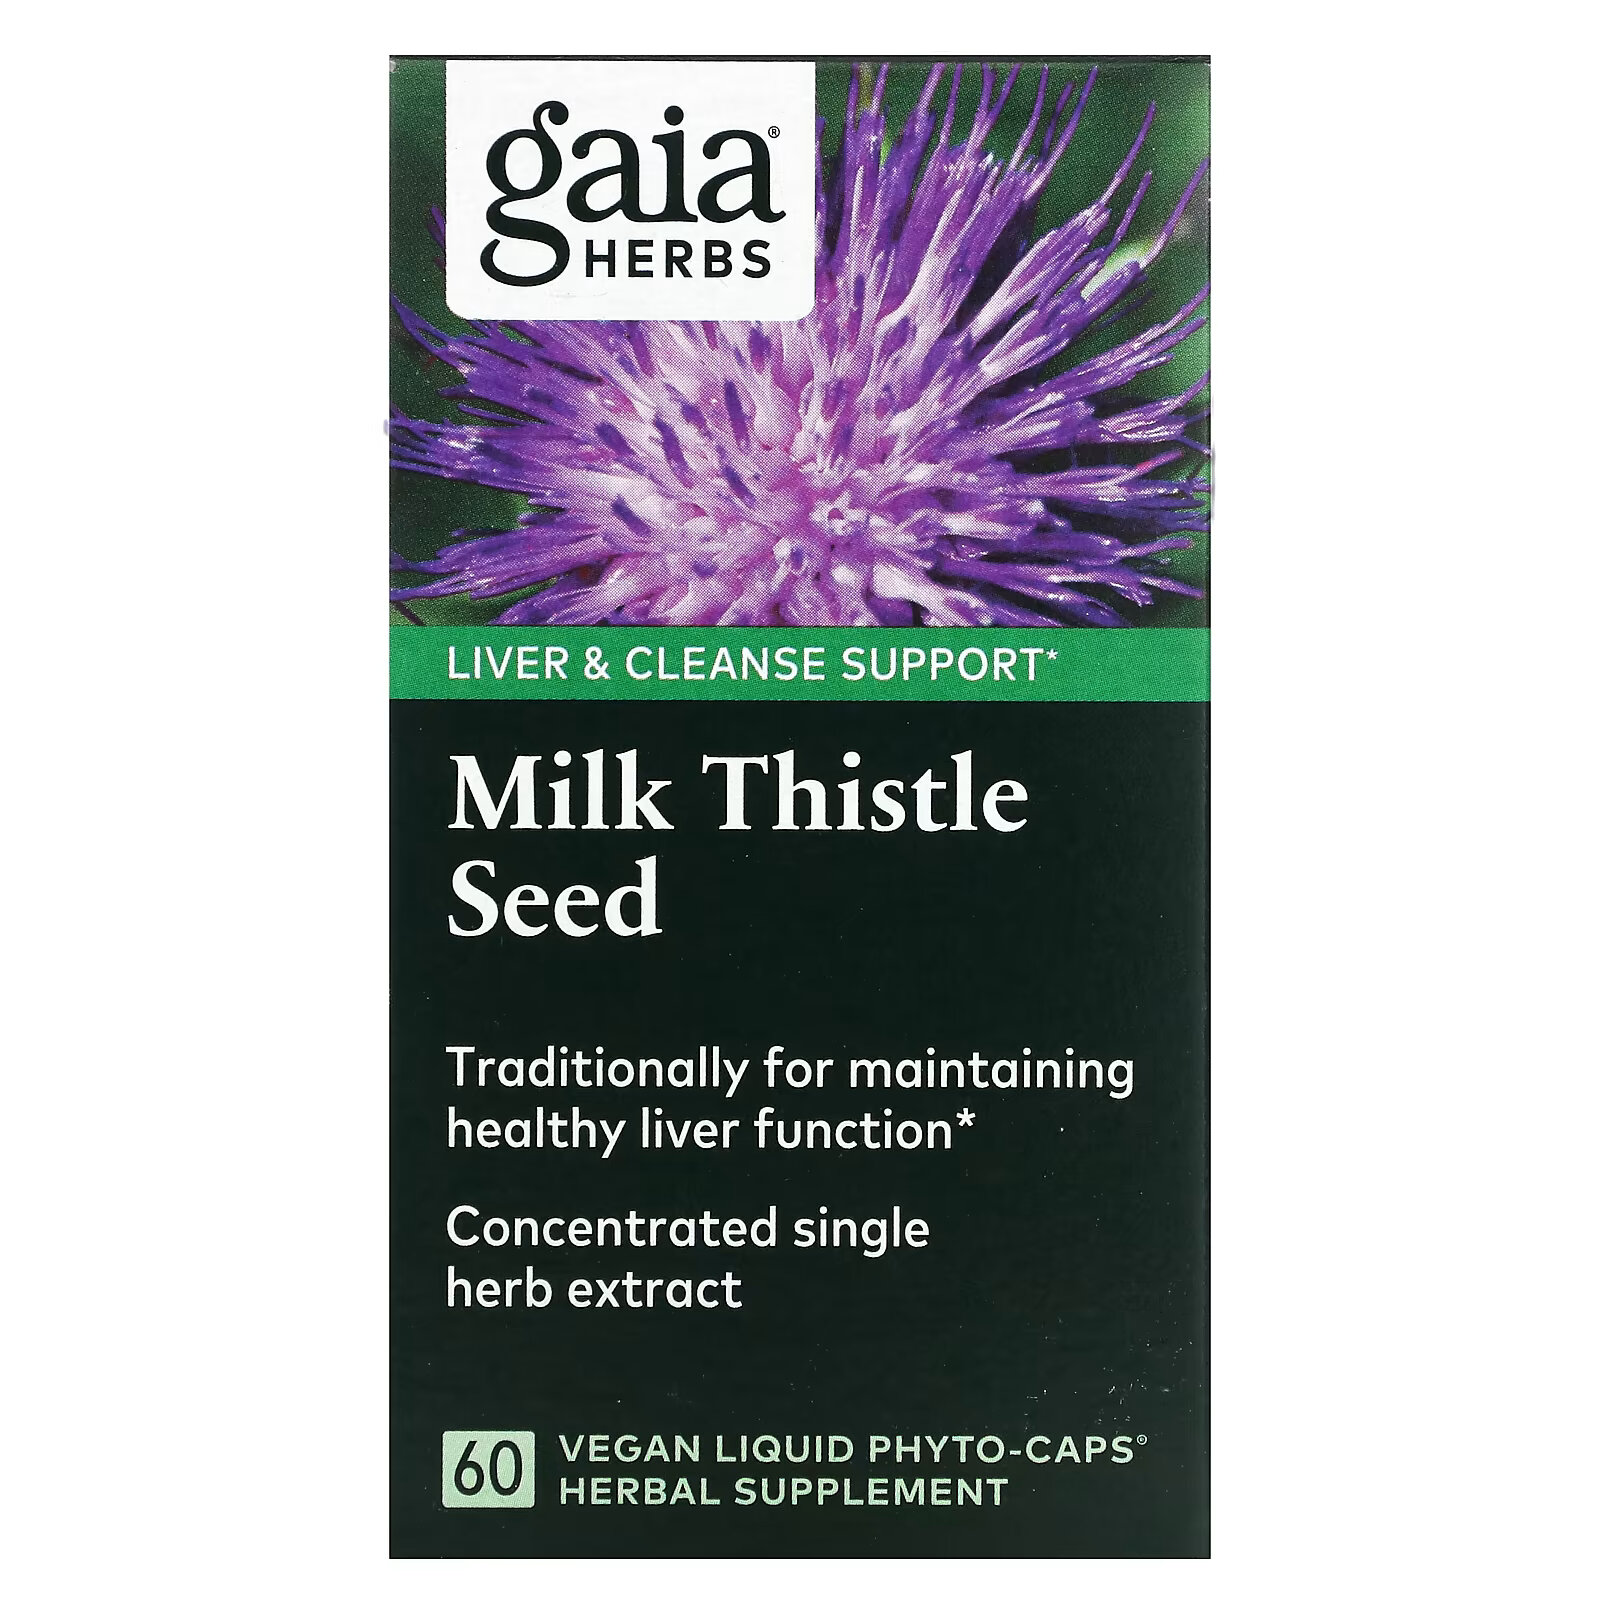 Gaia Herbs, семена расторопши, 60 веганских капсул с жидким содержимым Liquid Phyto-Cap gaia herbs семена расторопши 60 веганских капсул с жидким содержимым liquid phyto cap